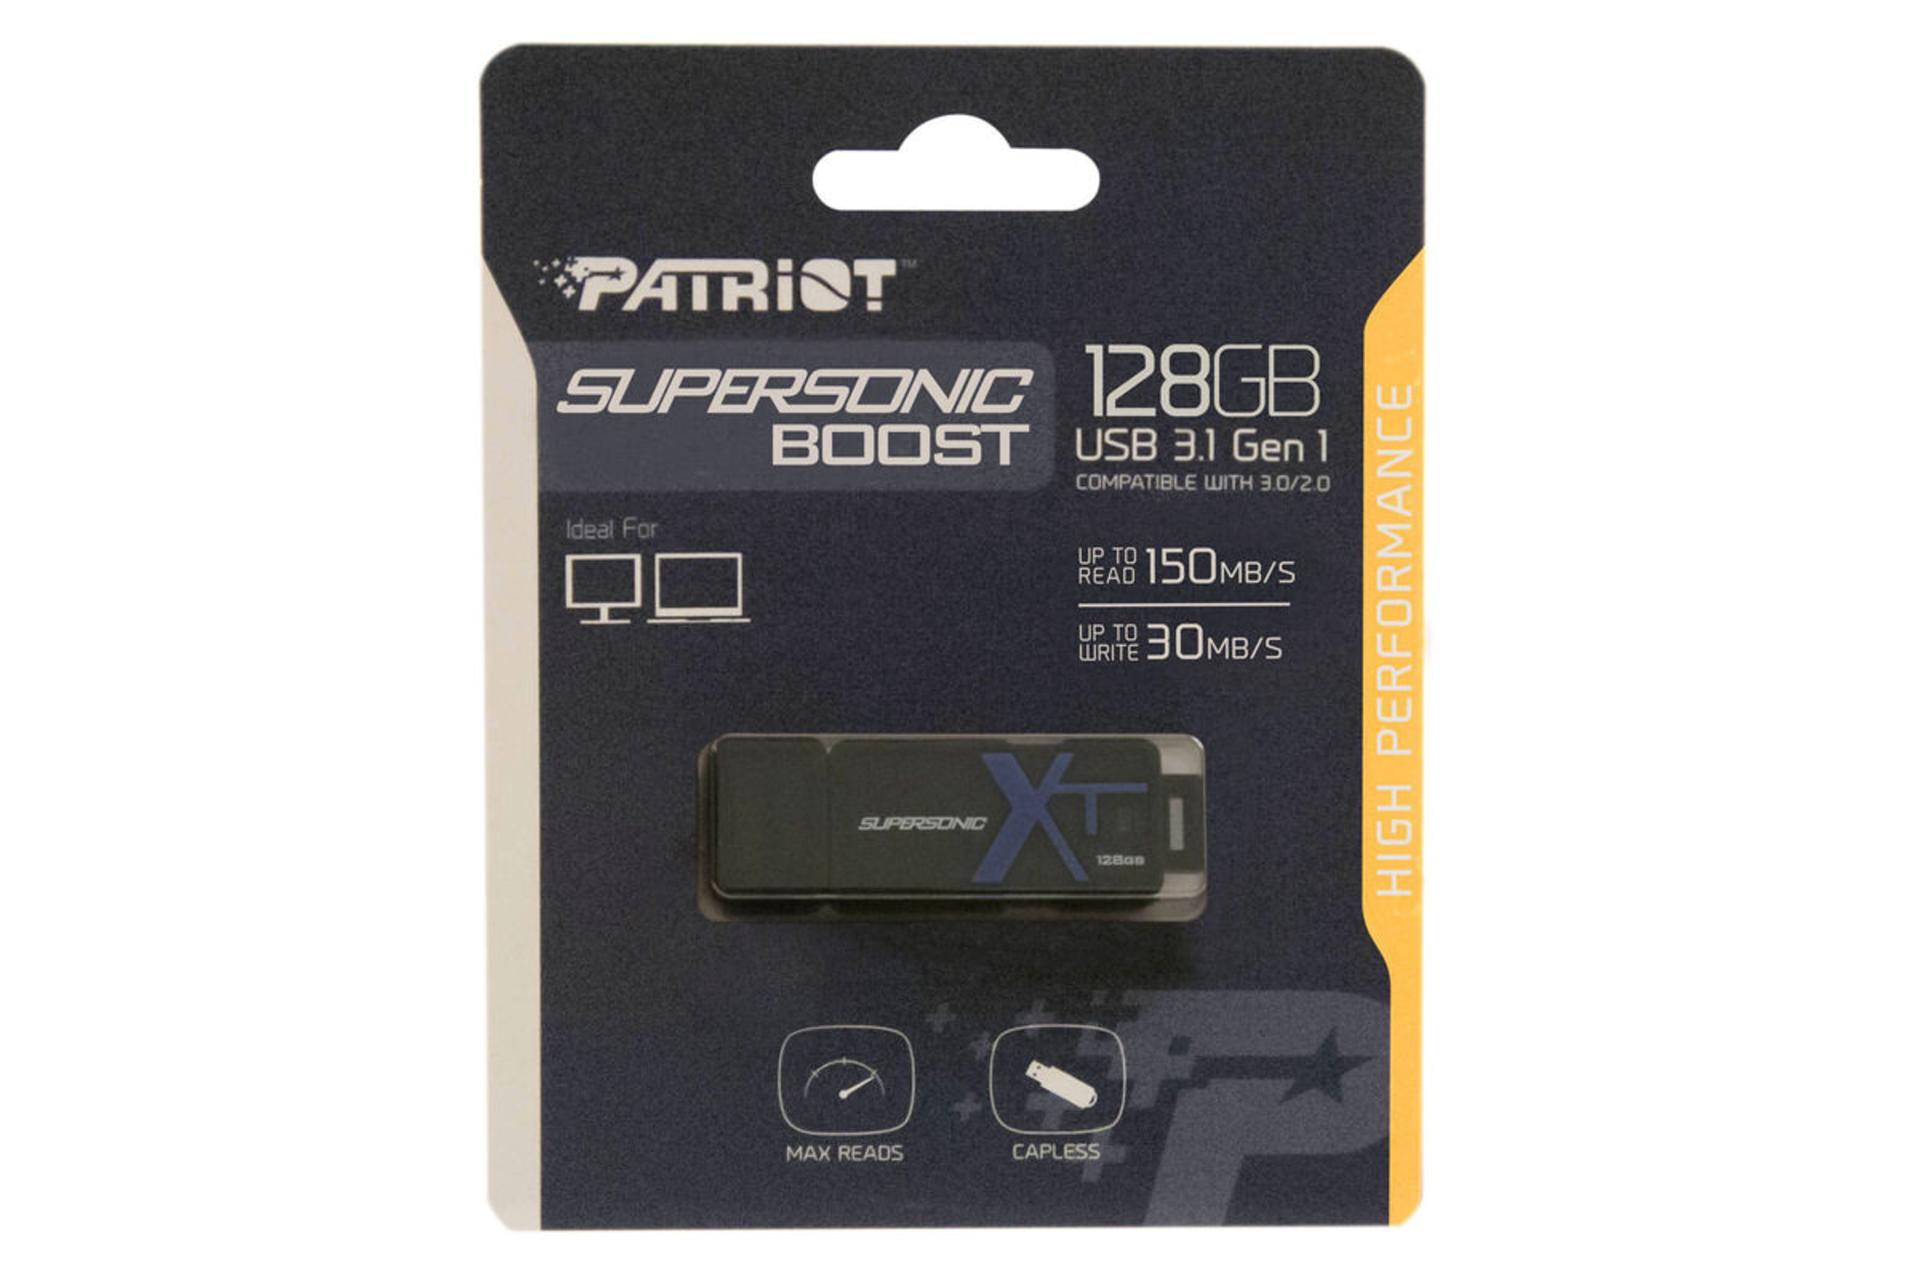 مرجع متخصصين ايران جعبه پاتريوت مدل Supersonic Boost XT USB3.1 Gen1 ظرفيت 128 گيگابايت